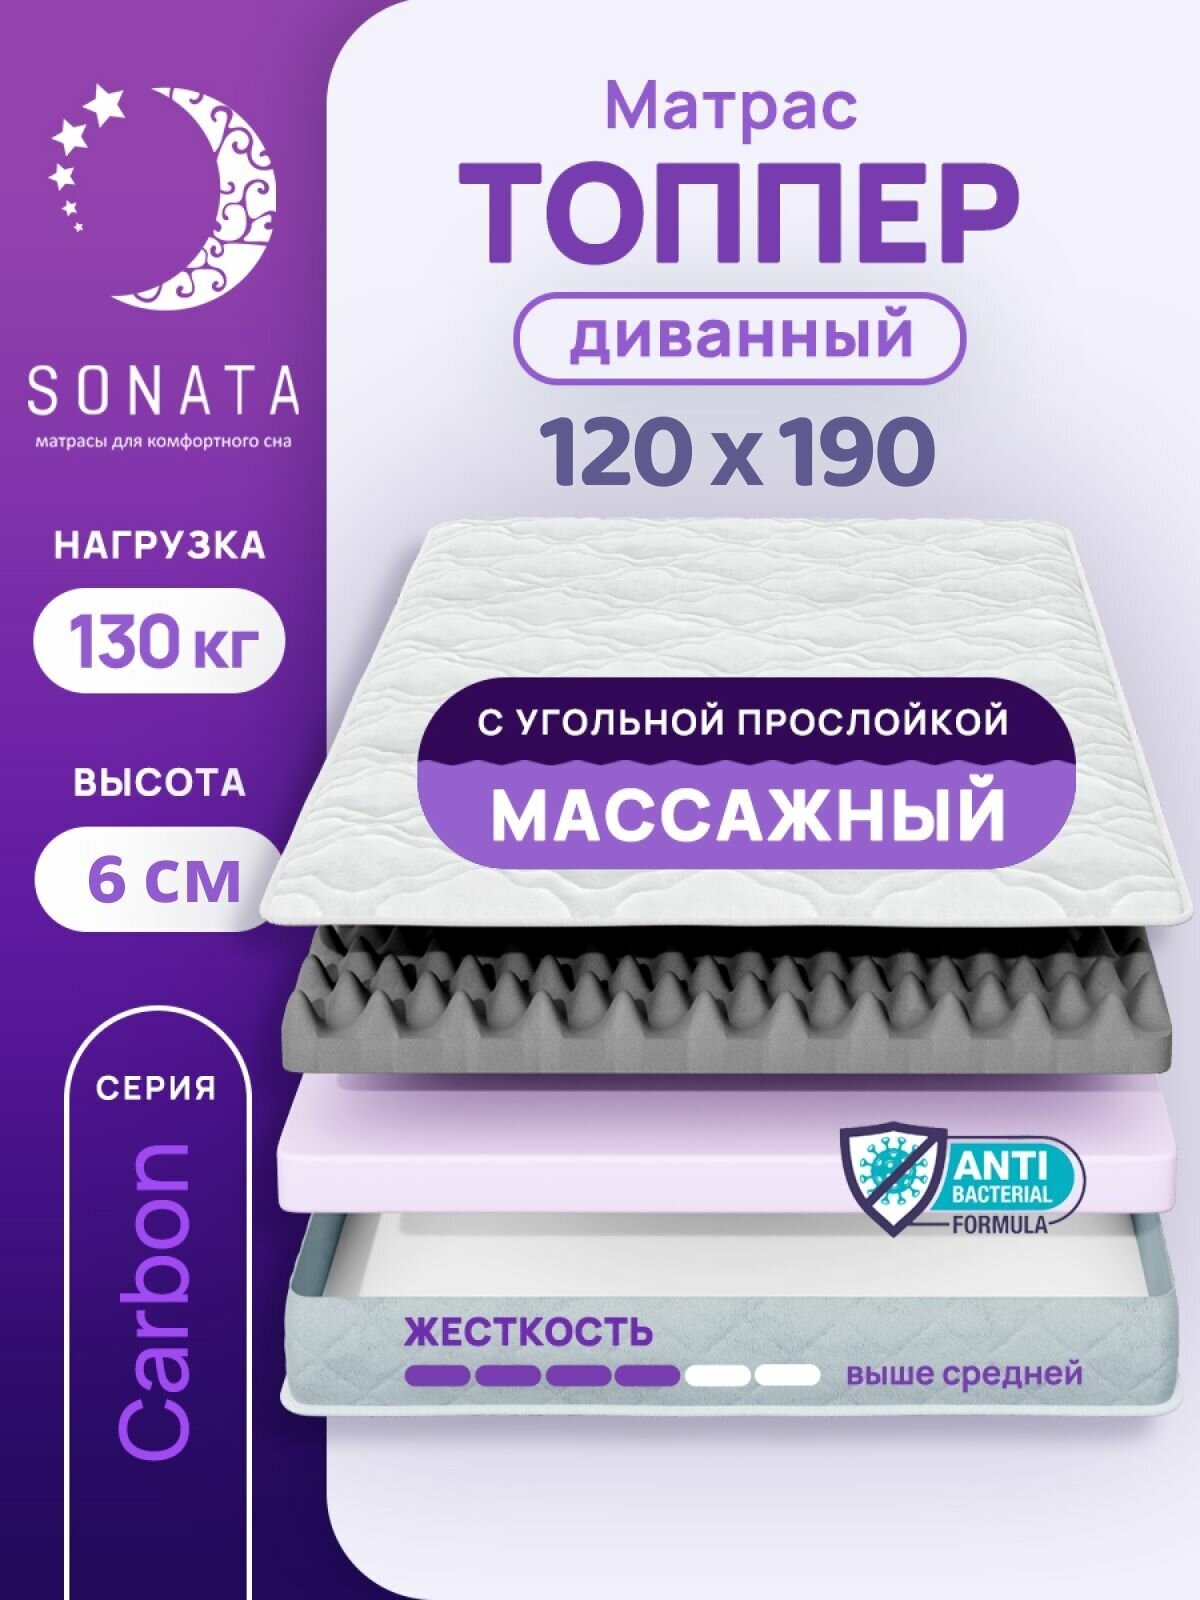 Топпер матрас 140х200 см SONATA ортопедический беспружинный двуспальный тонкий матрац для дивана кровати высота 6 см с массажным эффектом